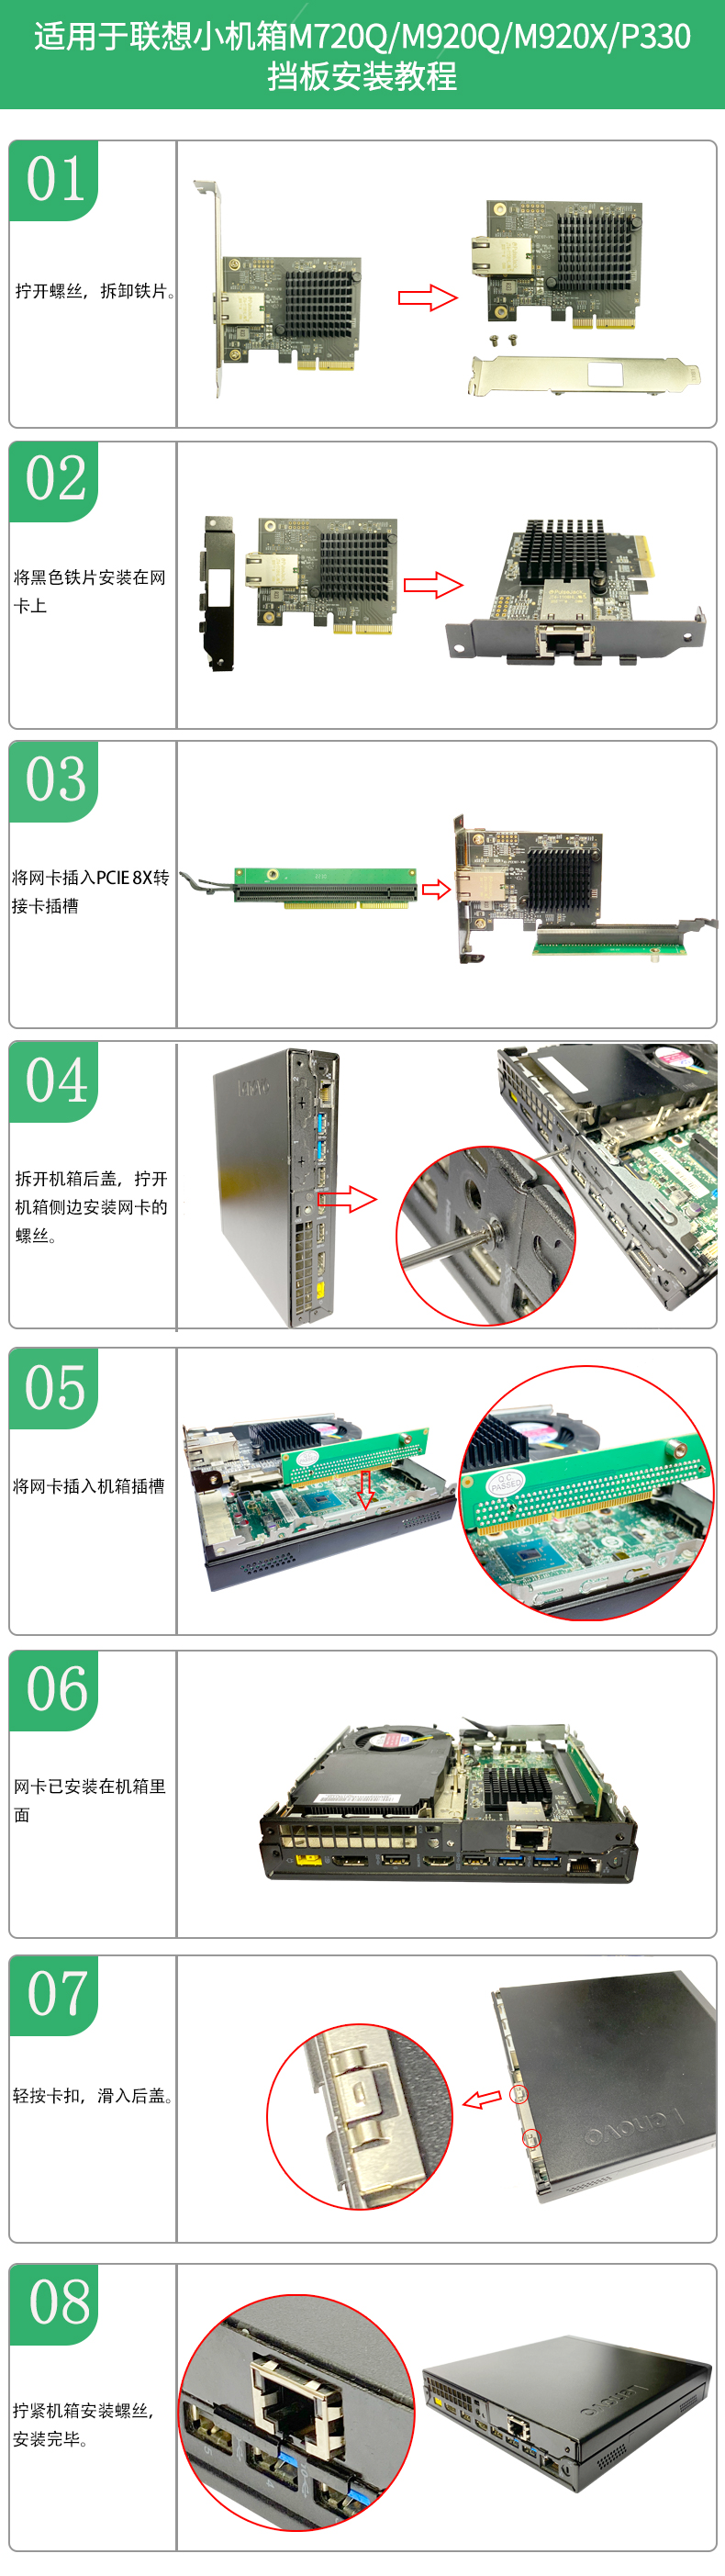 IO-PCE107-GLAN短铁片安装教程详情图中文.jpg